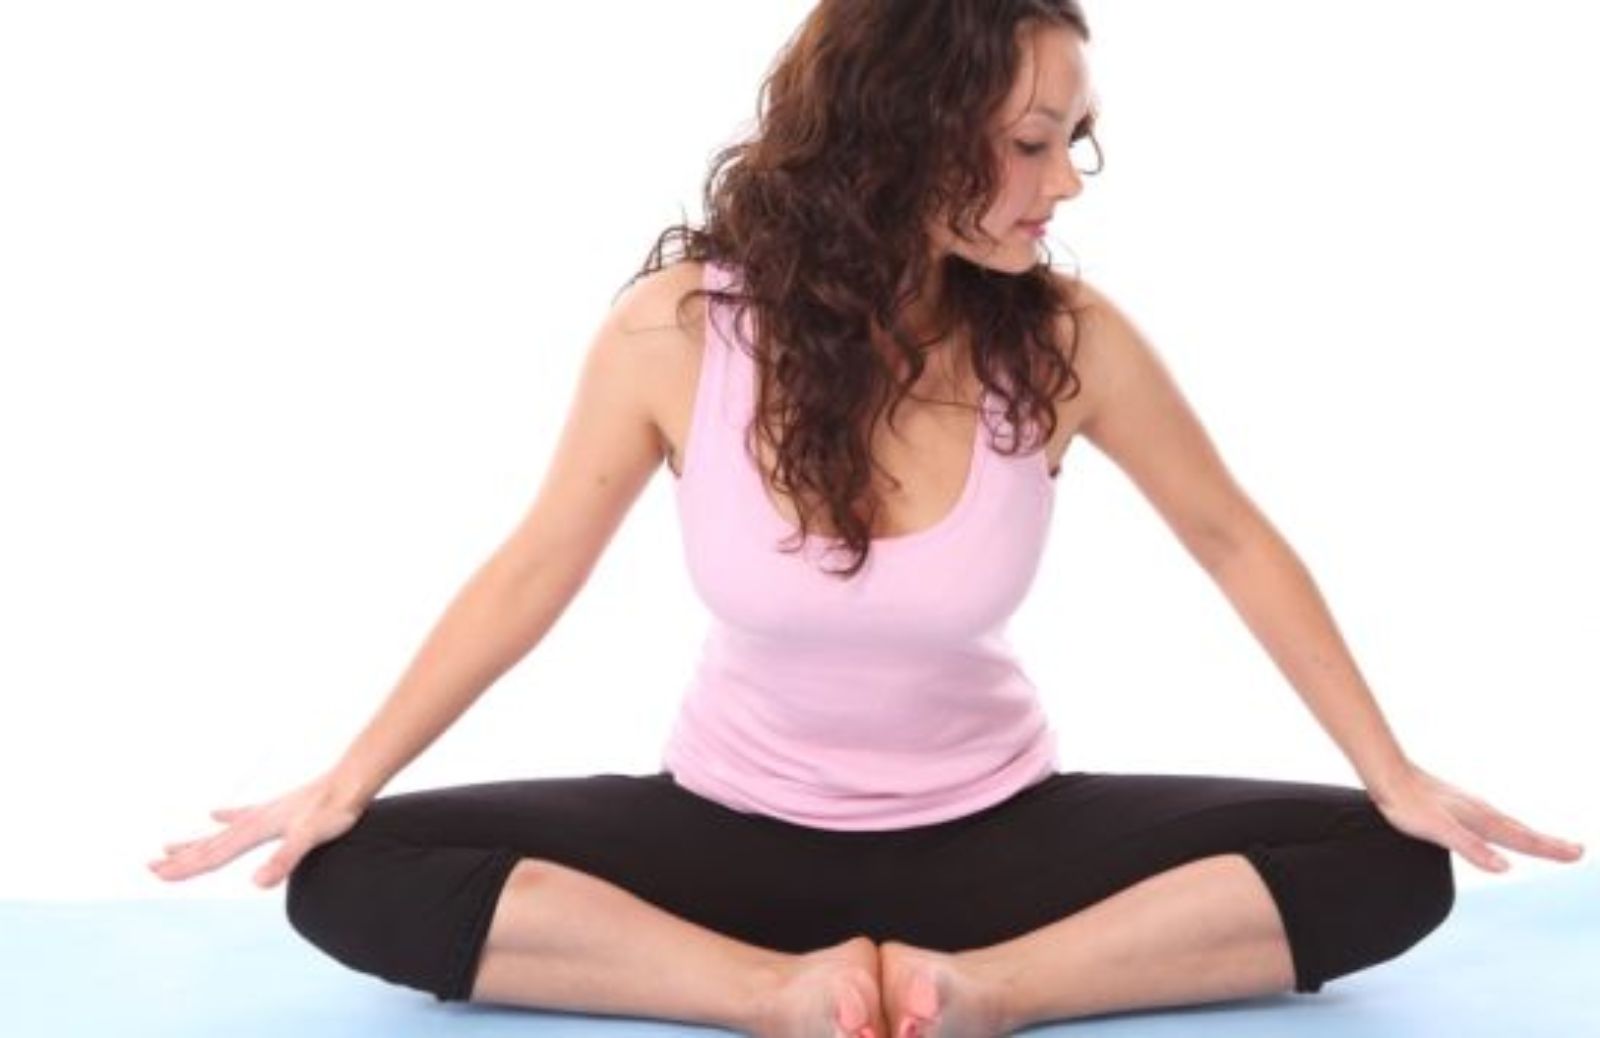 Come restare in forma e senza stress con lo yoga (2a parte)